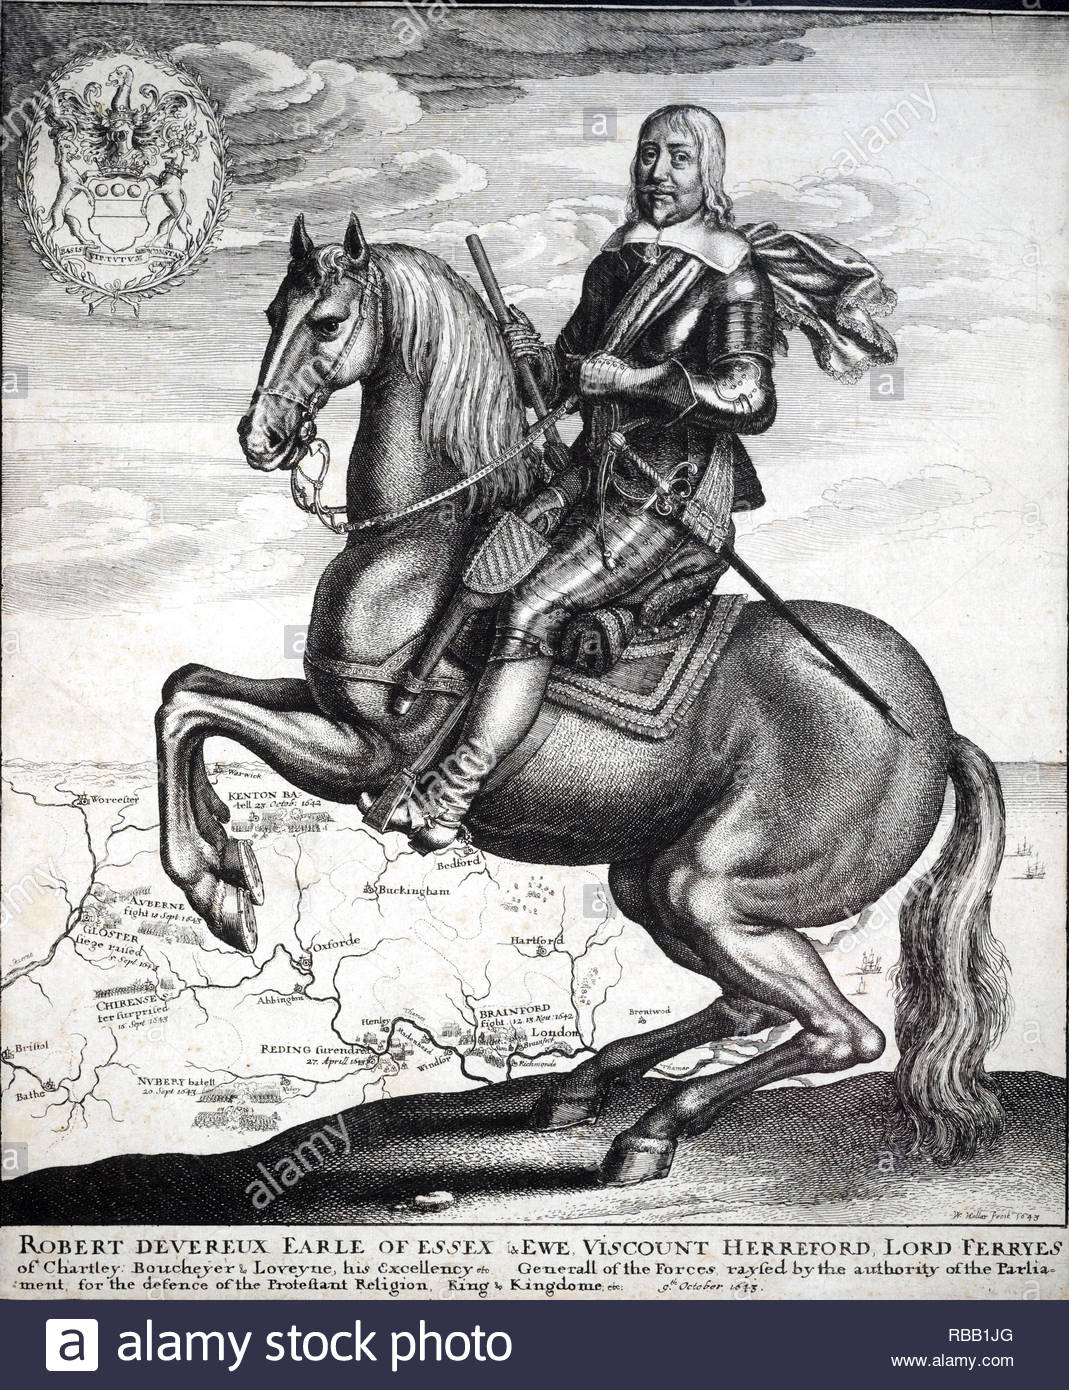 Robert Devereux, Earl of Essex, 1591 - 1646, war ein englischer Parlamentarier und Soldaten während der ersten Hälfte des 17. Jahrhunderts, Radierung von Böhmische Kupferstecher Wenzel Hollar von 1643 Stockfoto